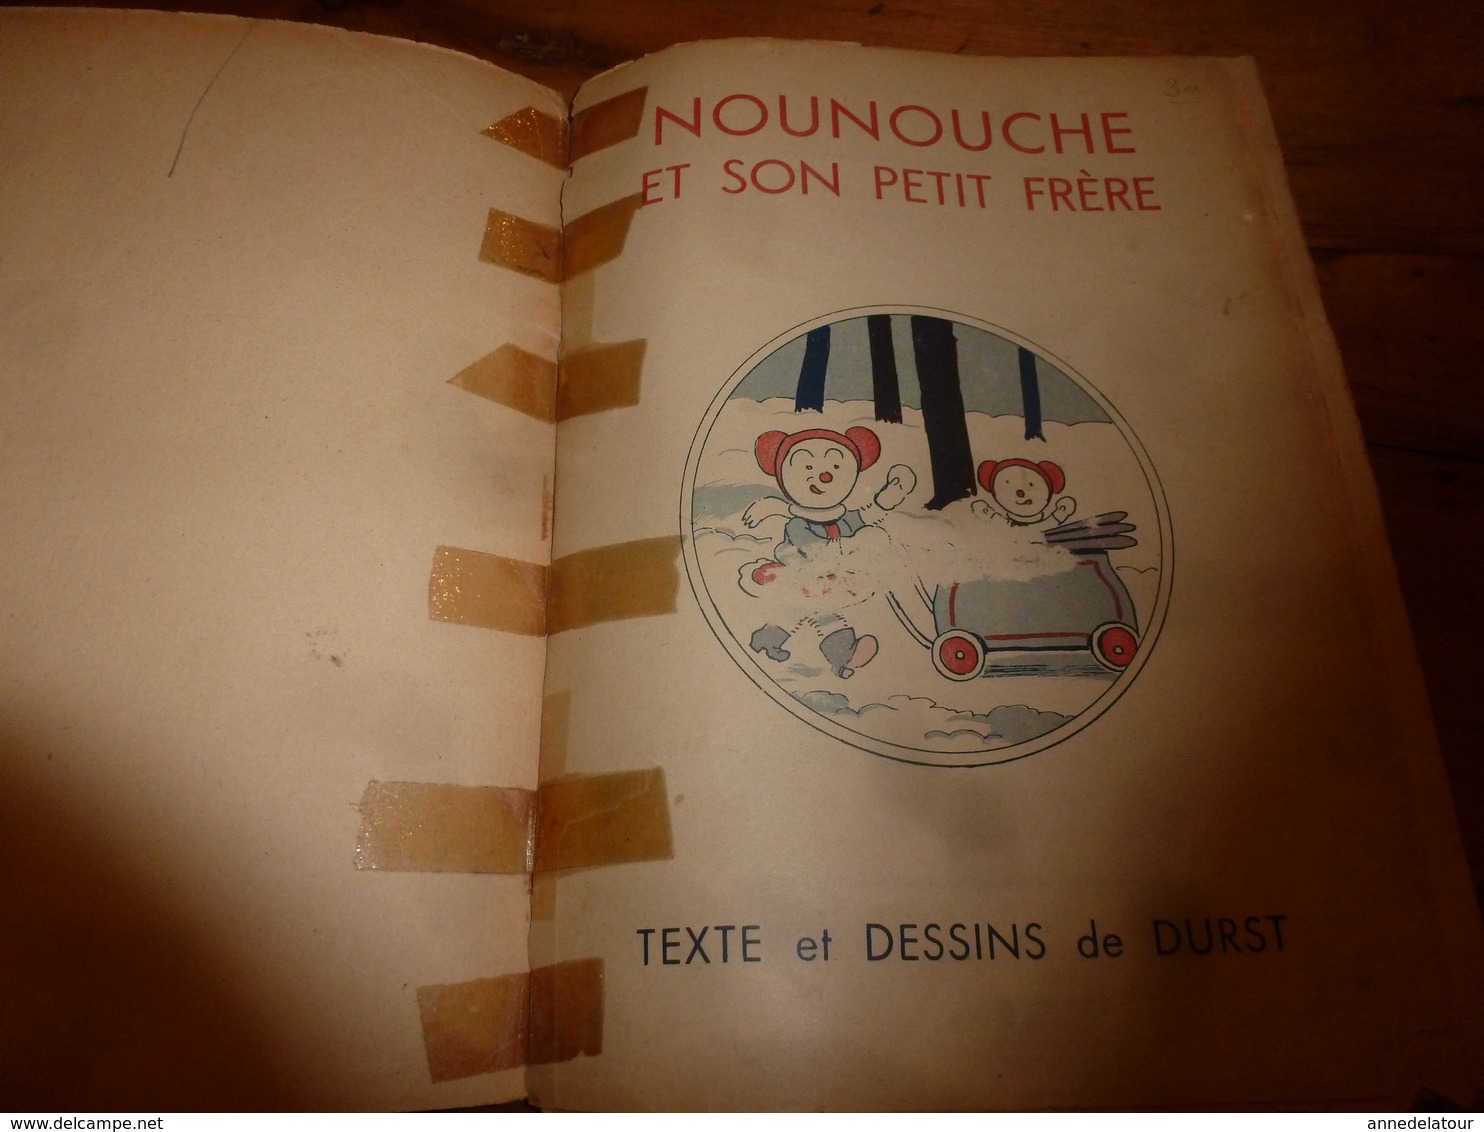 1951 NOUNOUCHE et son petit frère,   texte et dessins de DURST